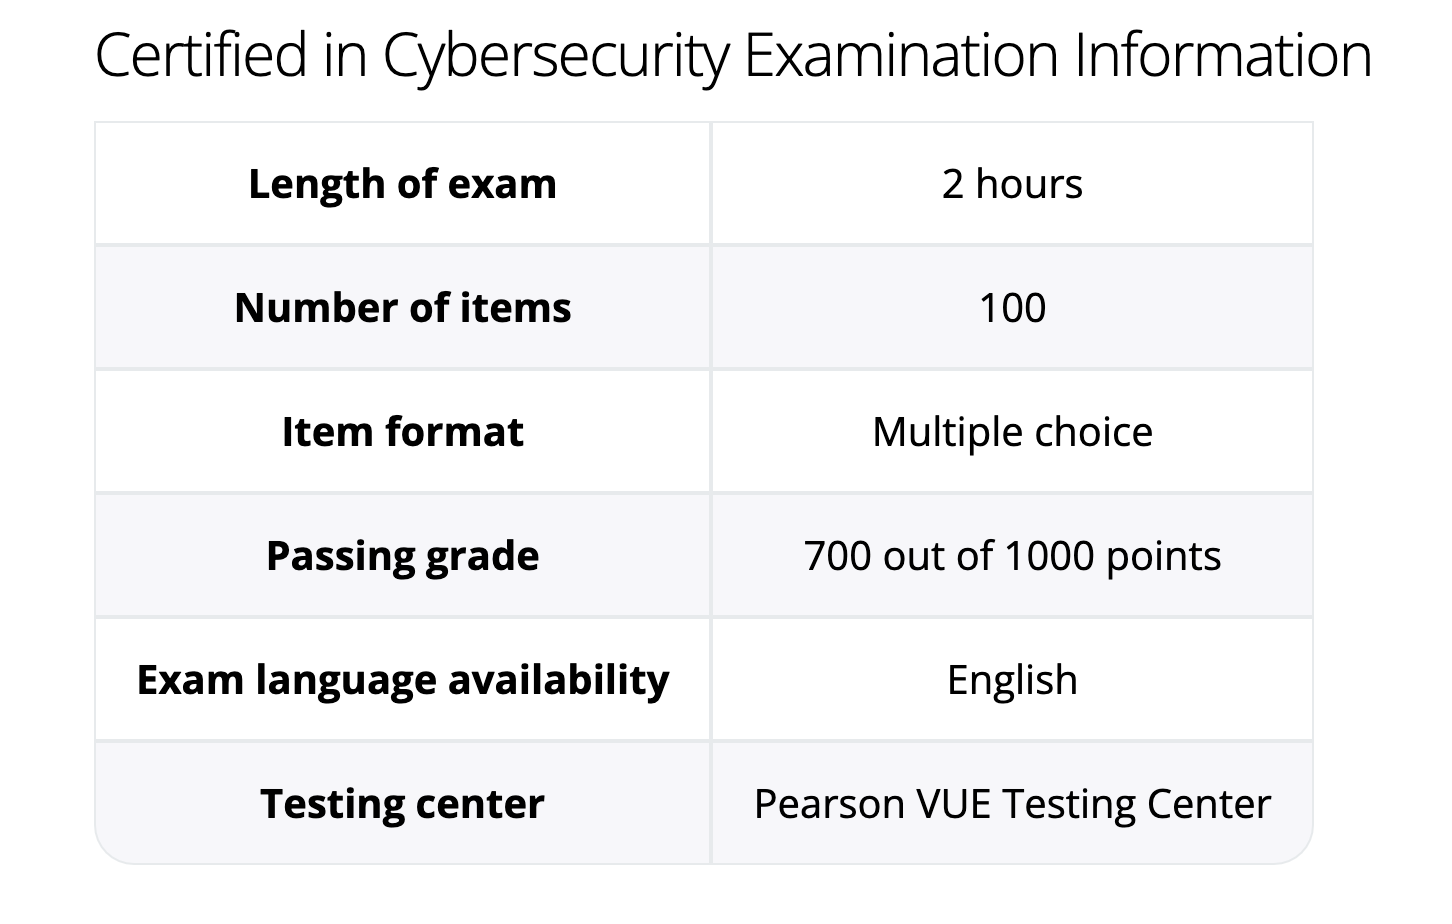 CC Exam details